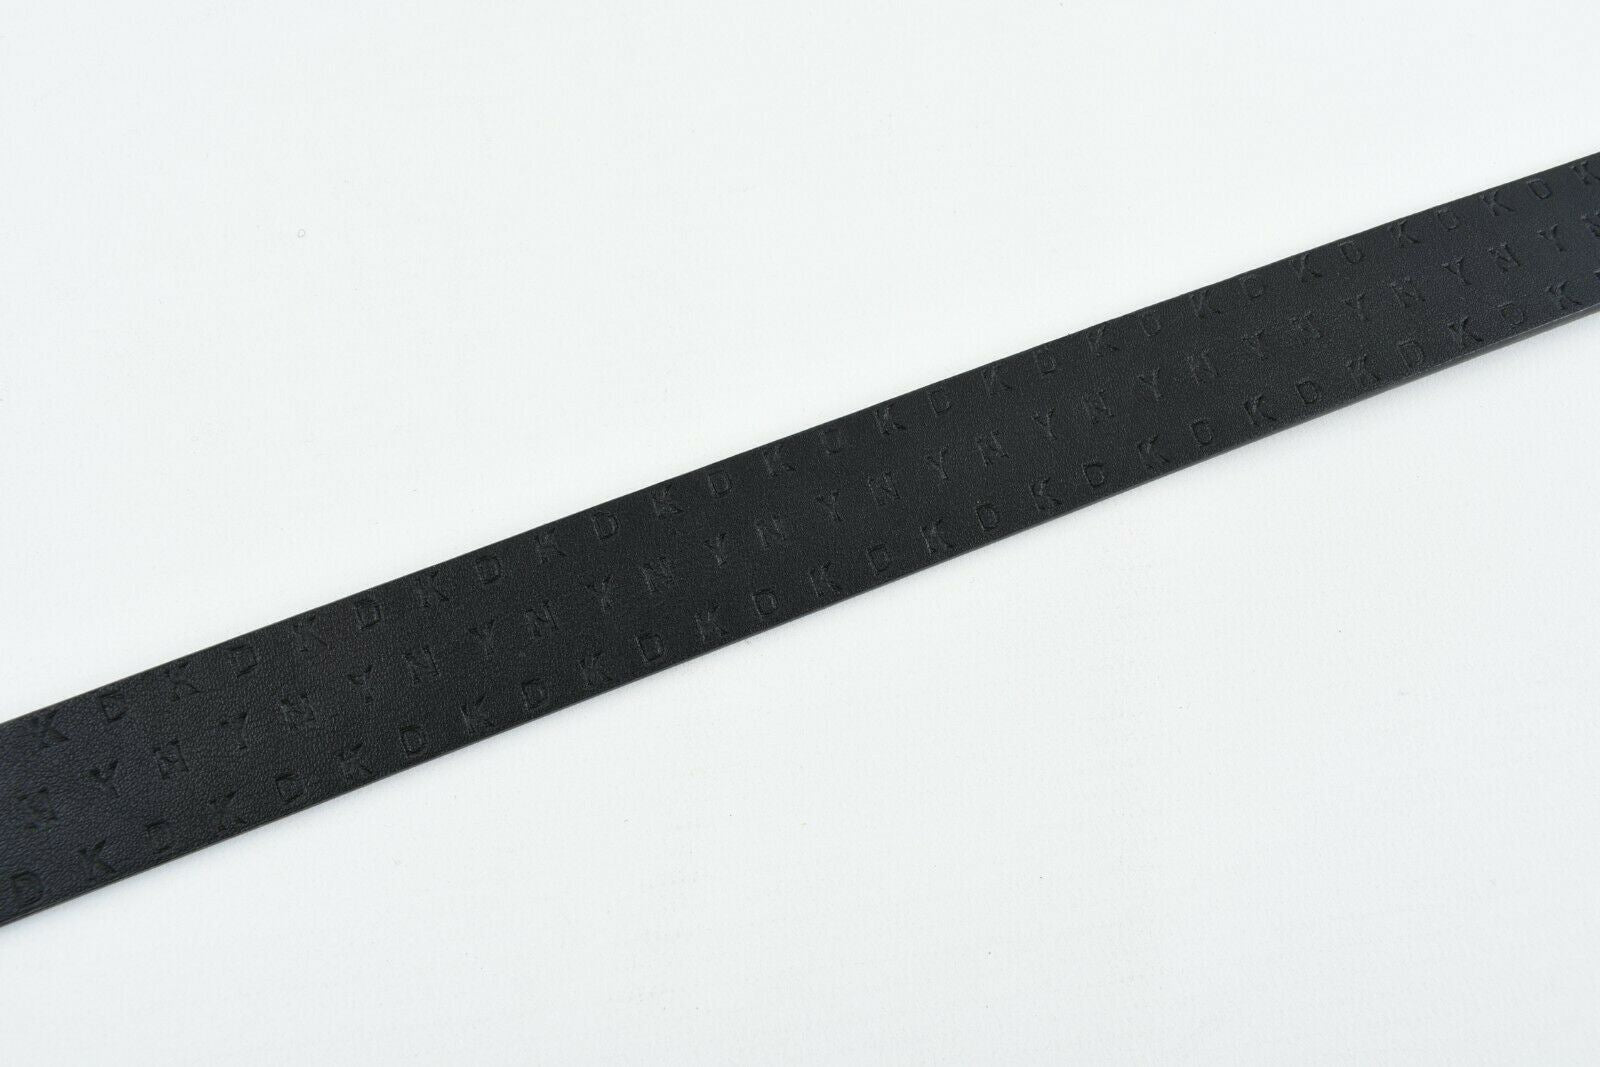 DKNY Women's Faux Leather Reversible Belt, Black/Brown, 1" wide, size L